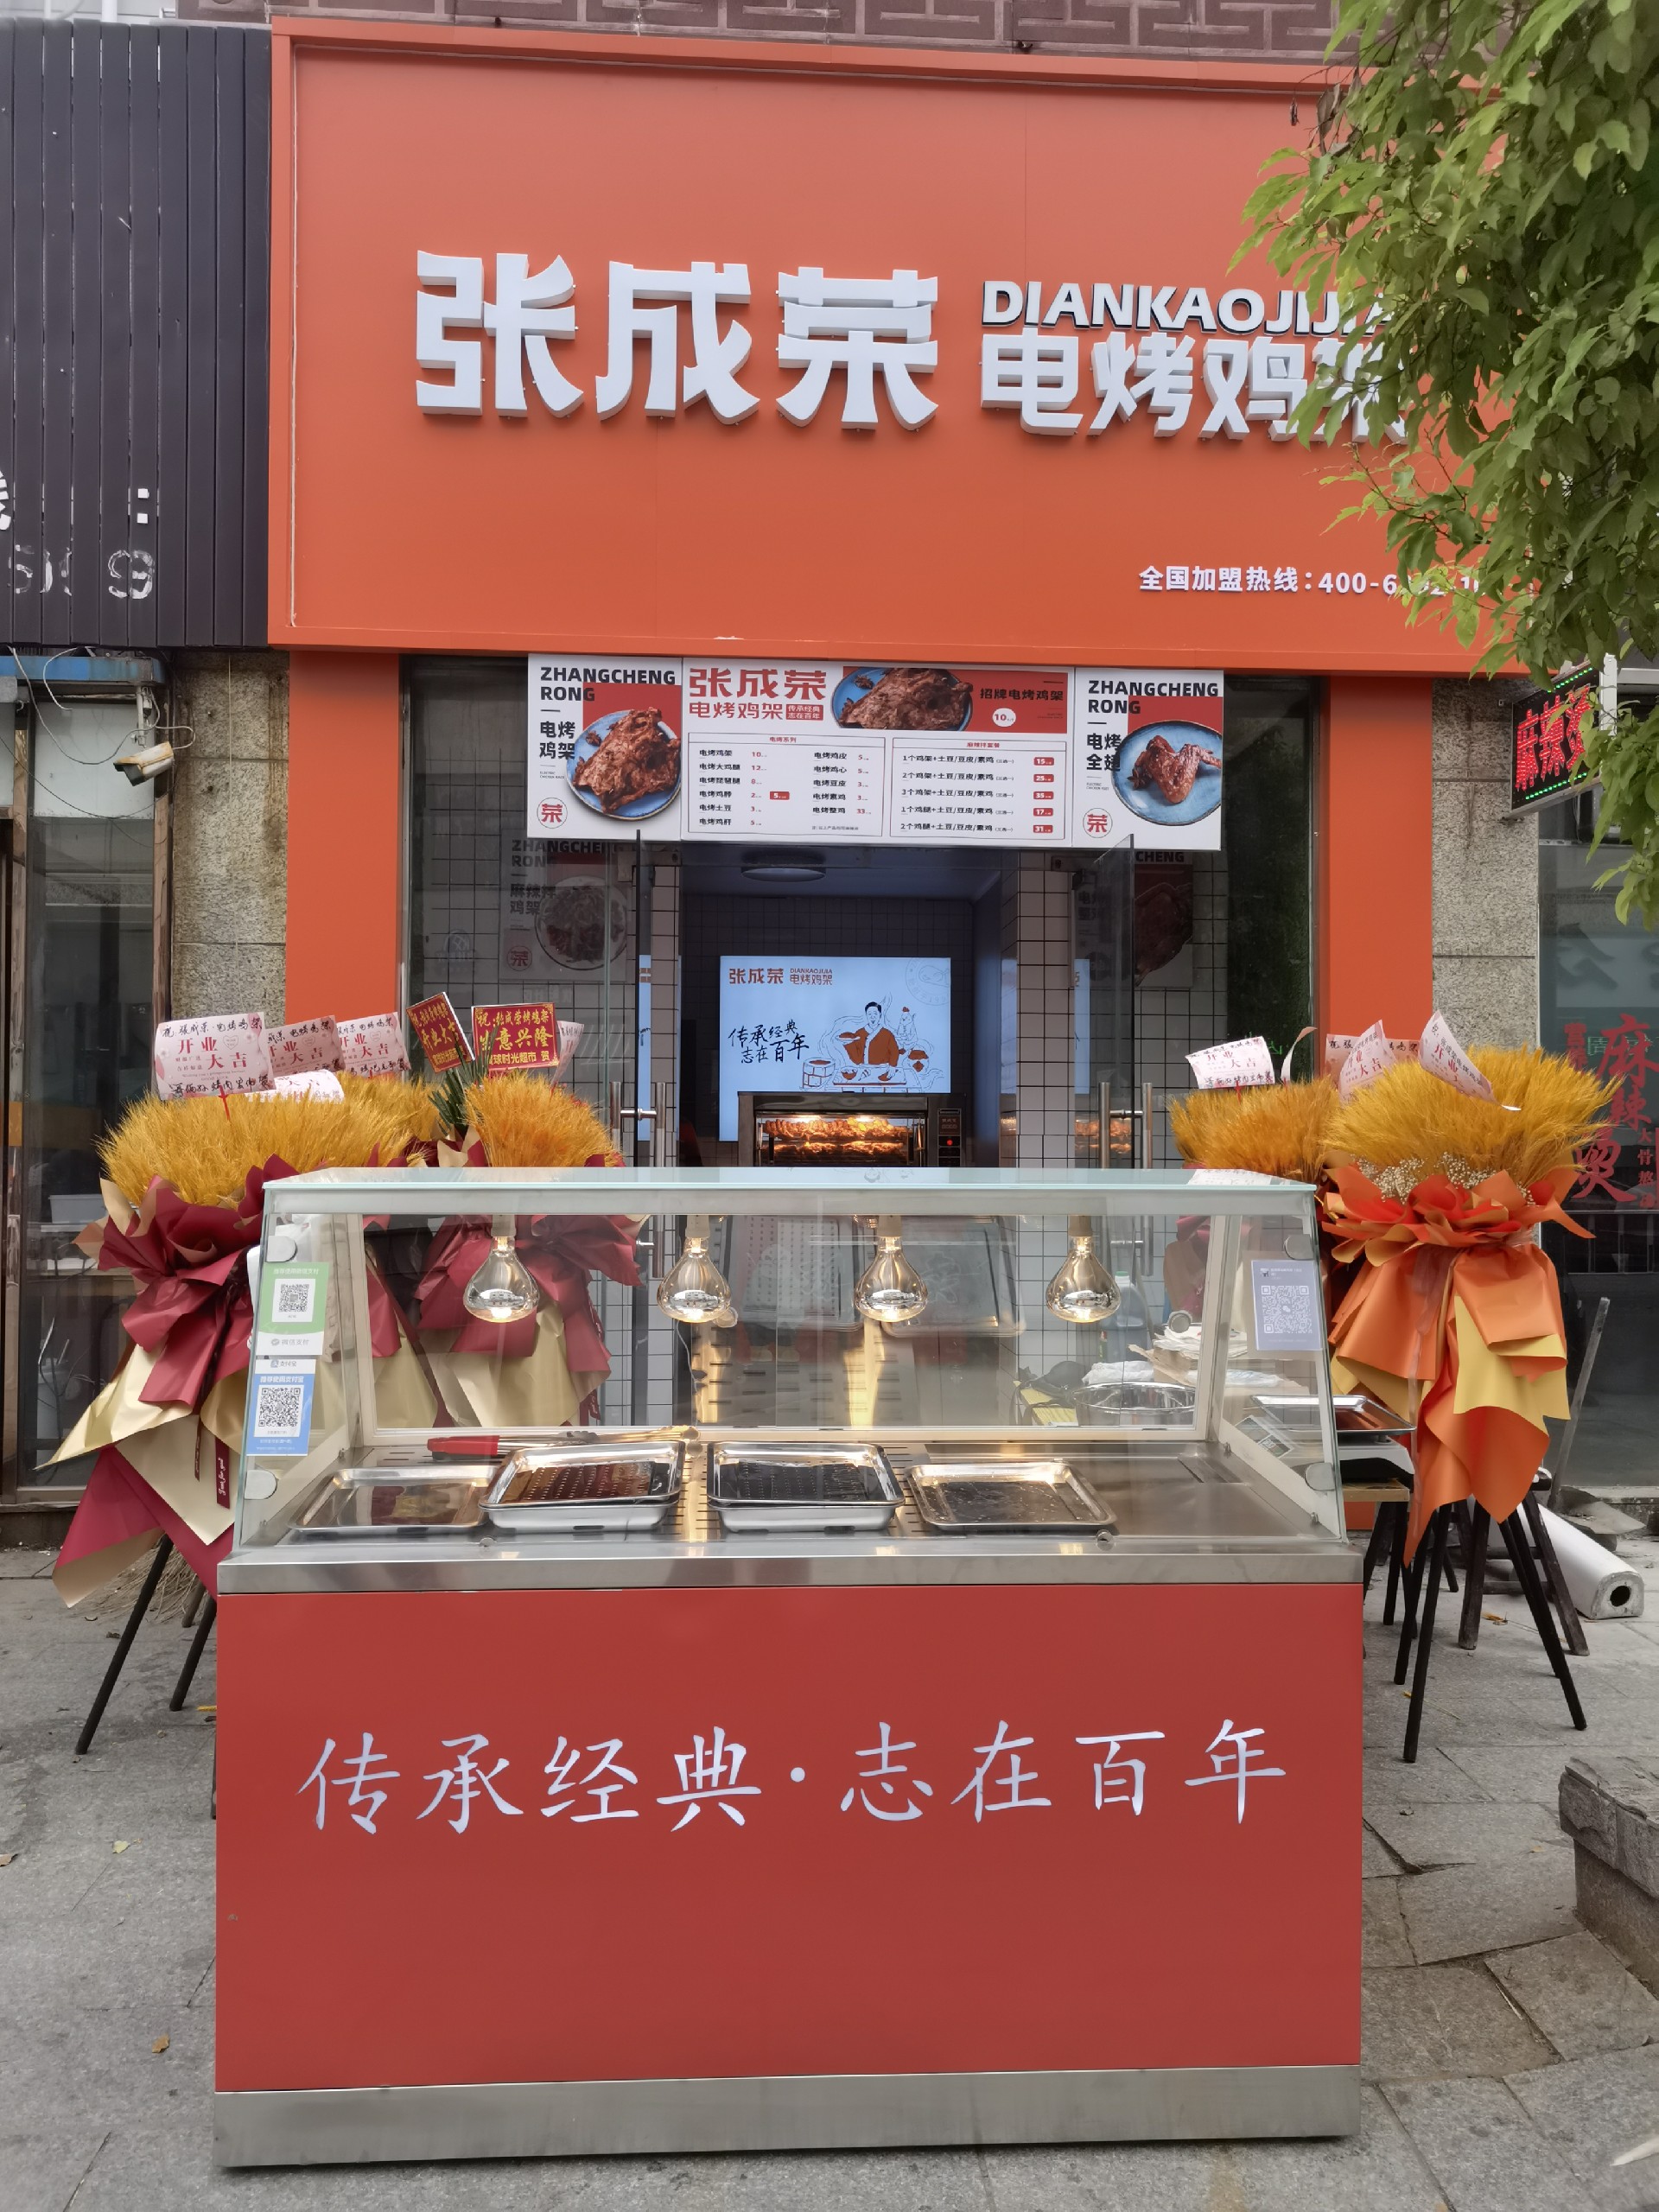 張成榮電烤雞架江蘇揚州店